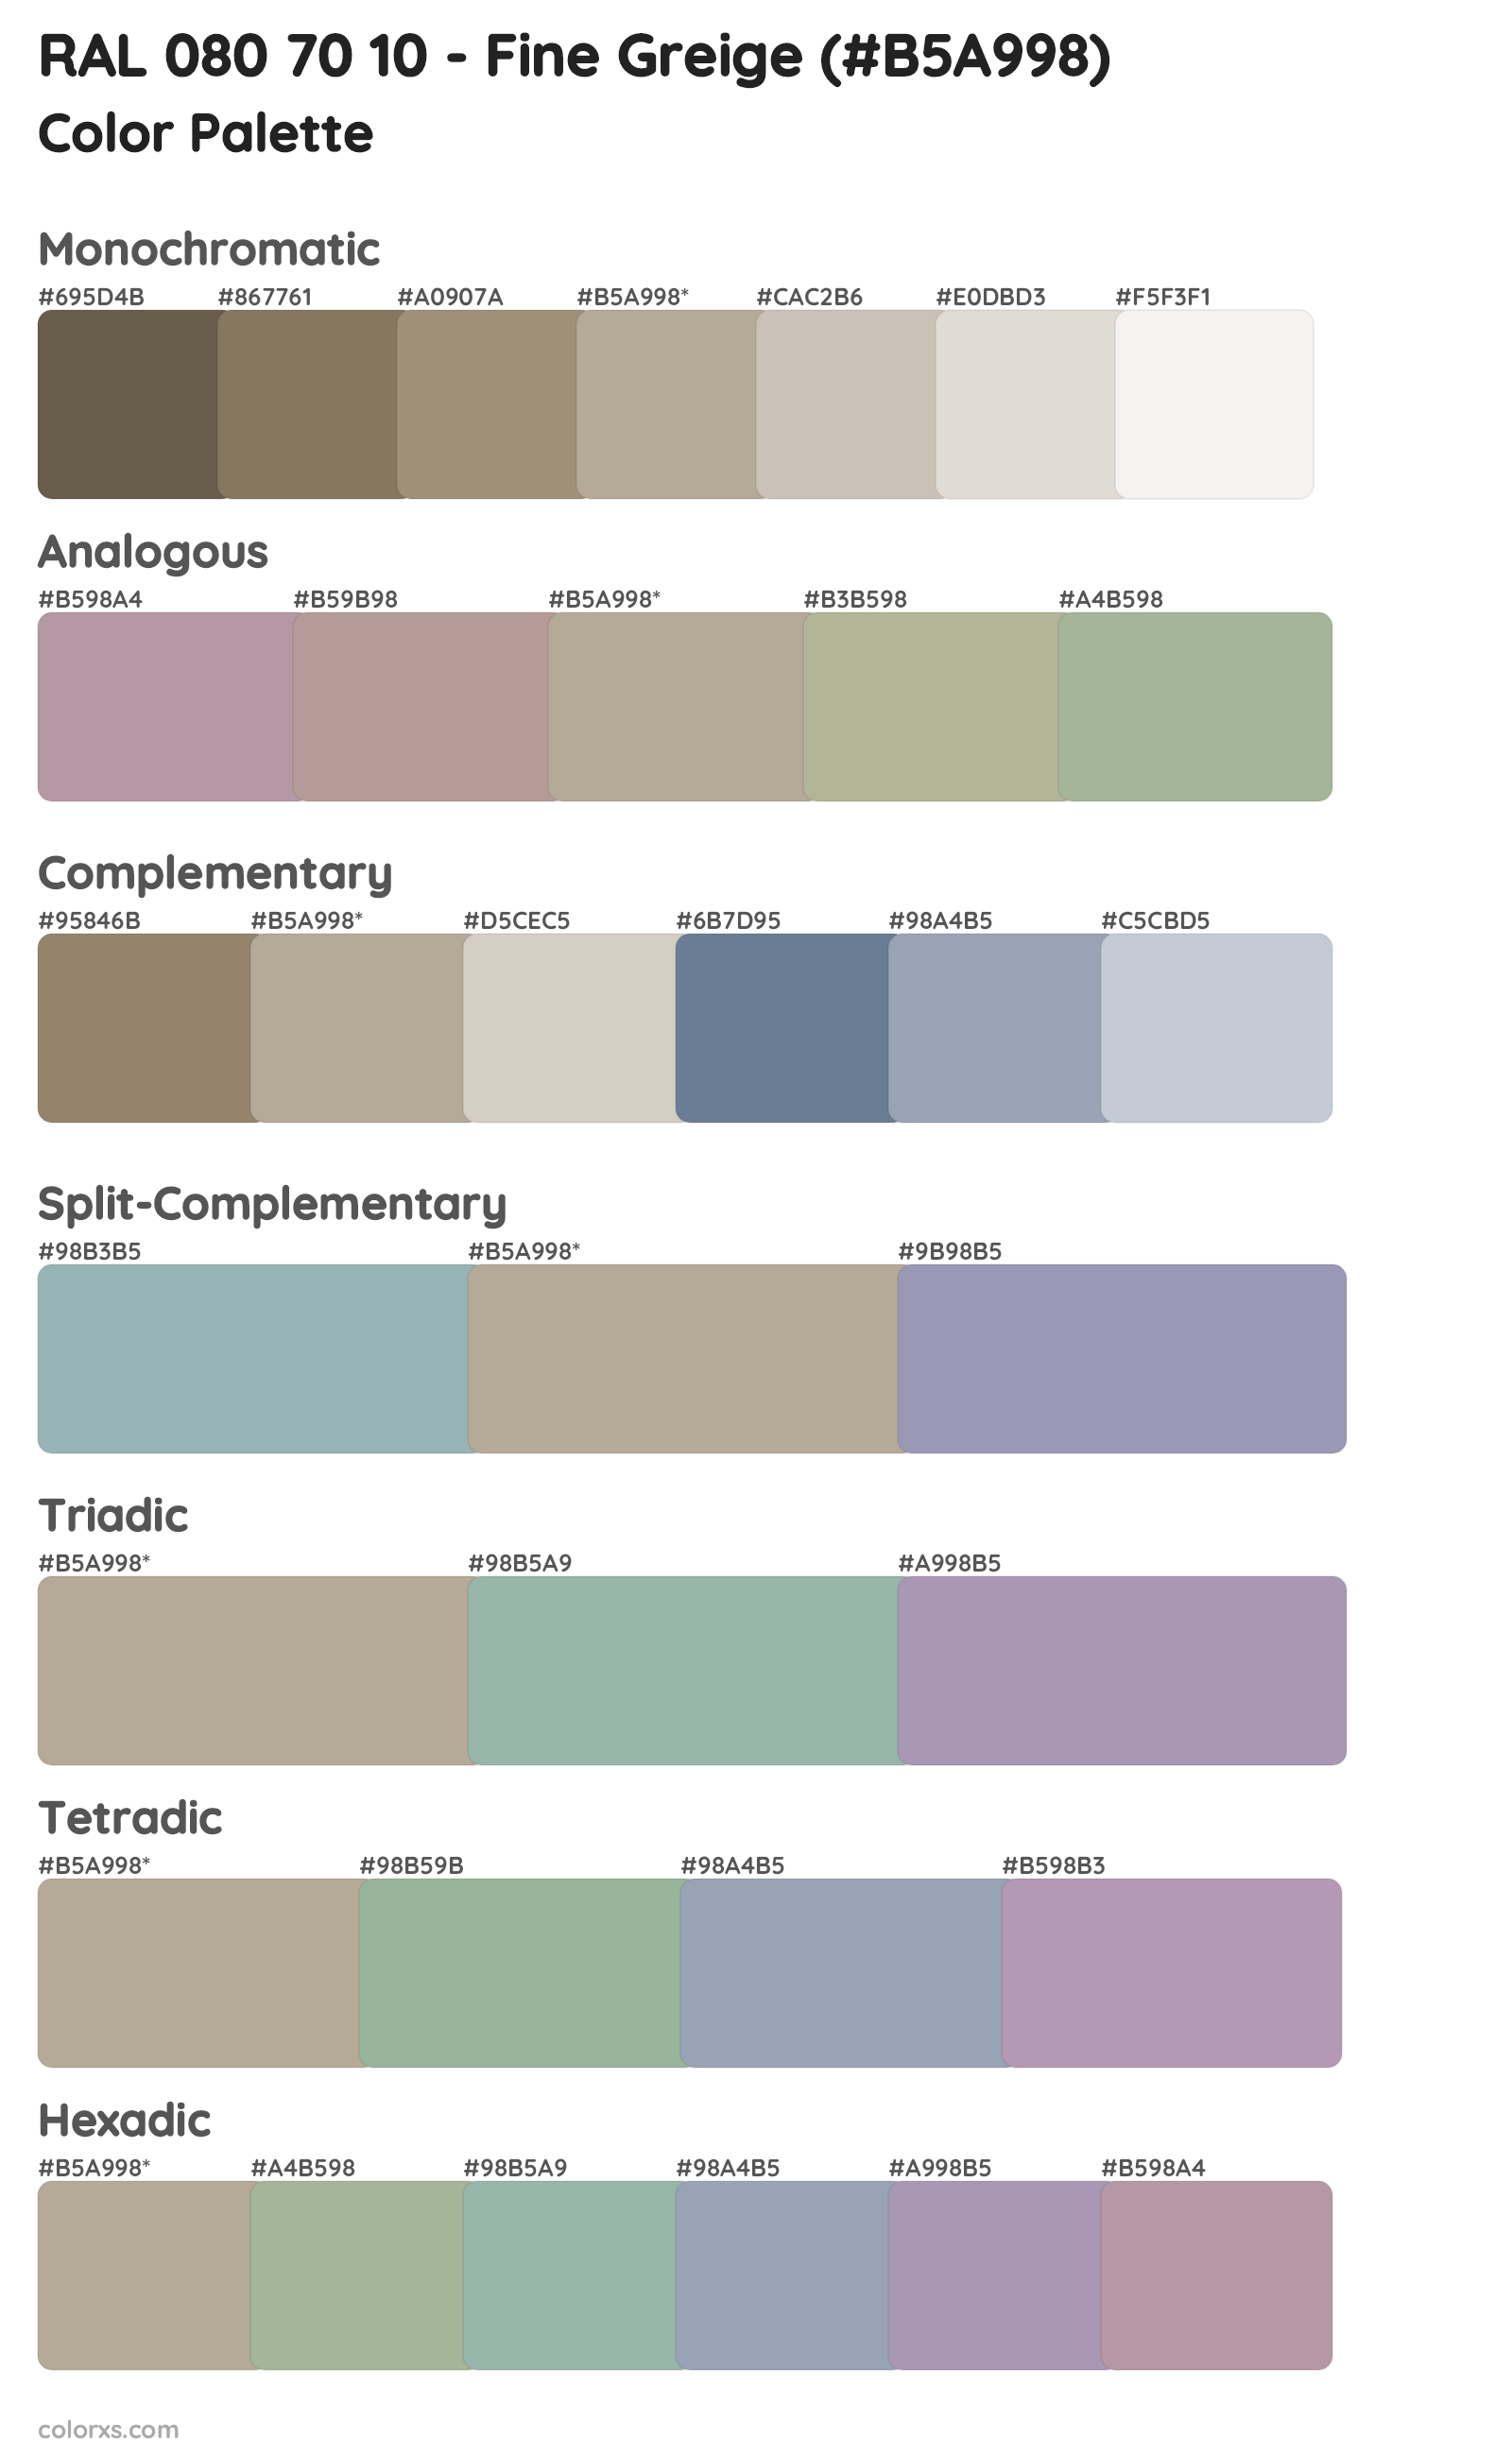 RAL 080 70 10 - Fine Greige Color Scheme Palettes